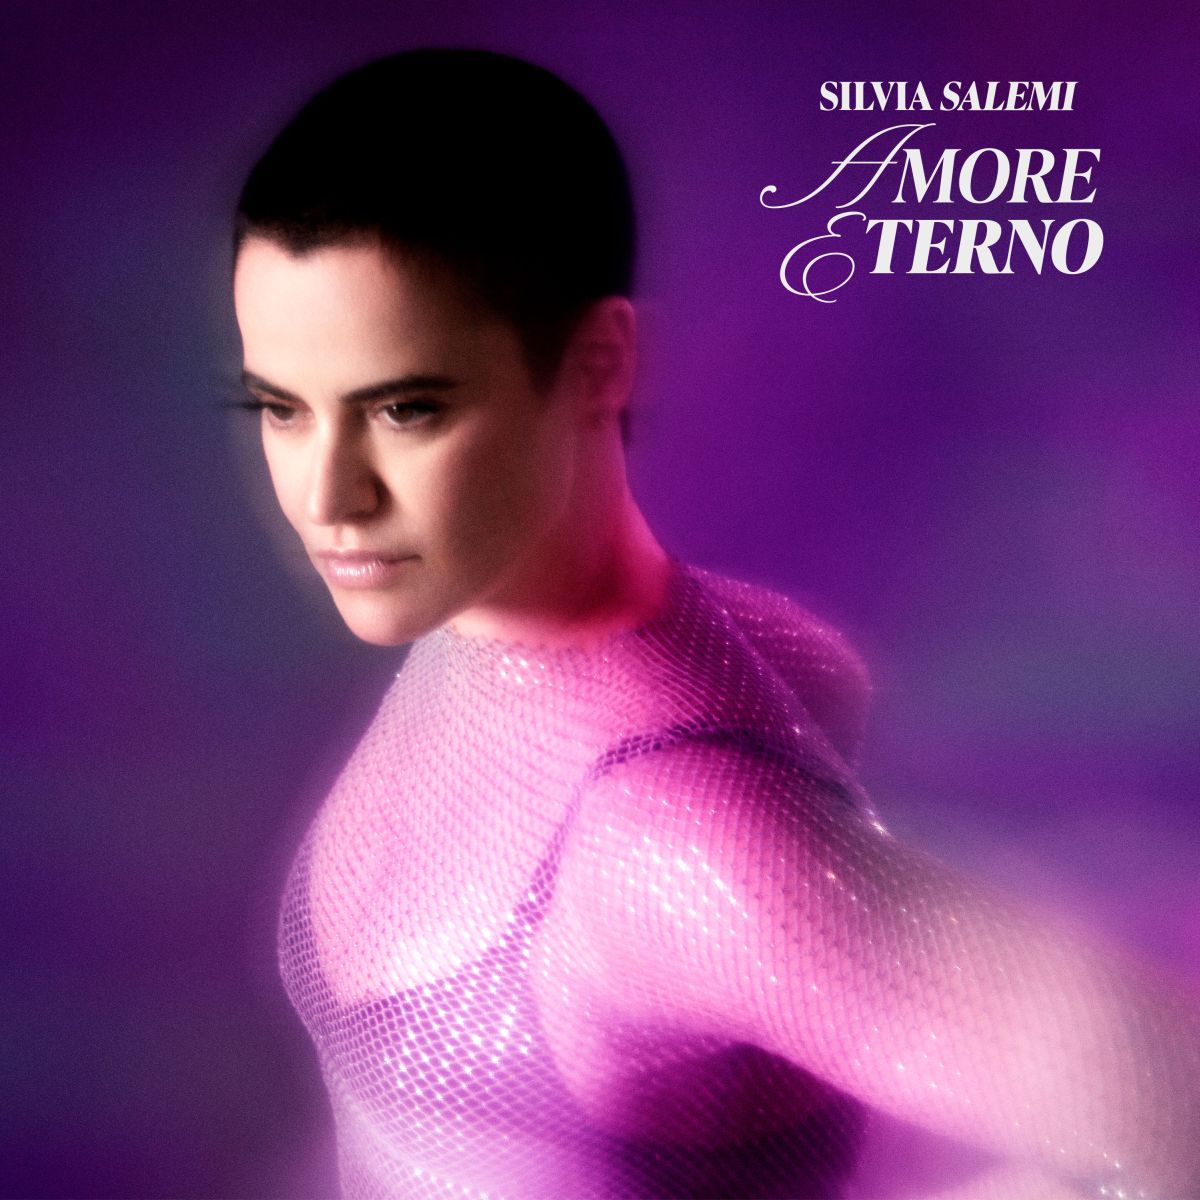 Silvia Salemi: “Amore eterno”, il nuovo brano che anticipa la raccolta “23 ore” in uscita il 21 giugno